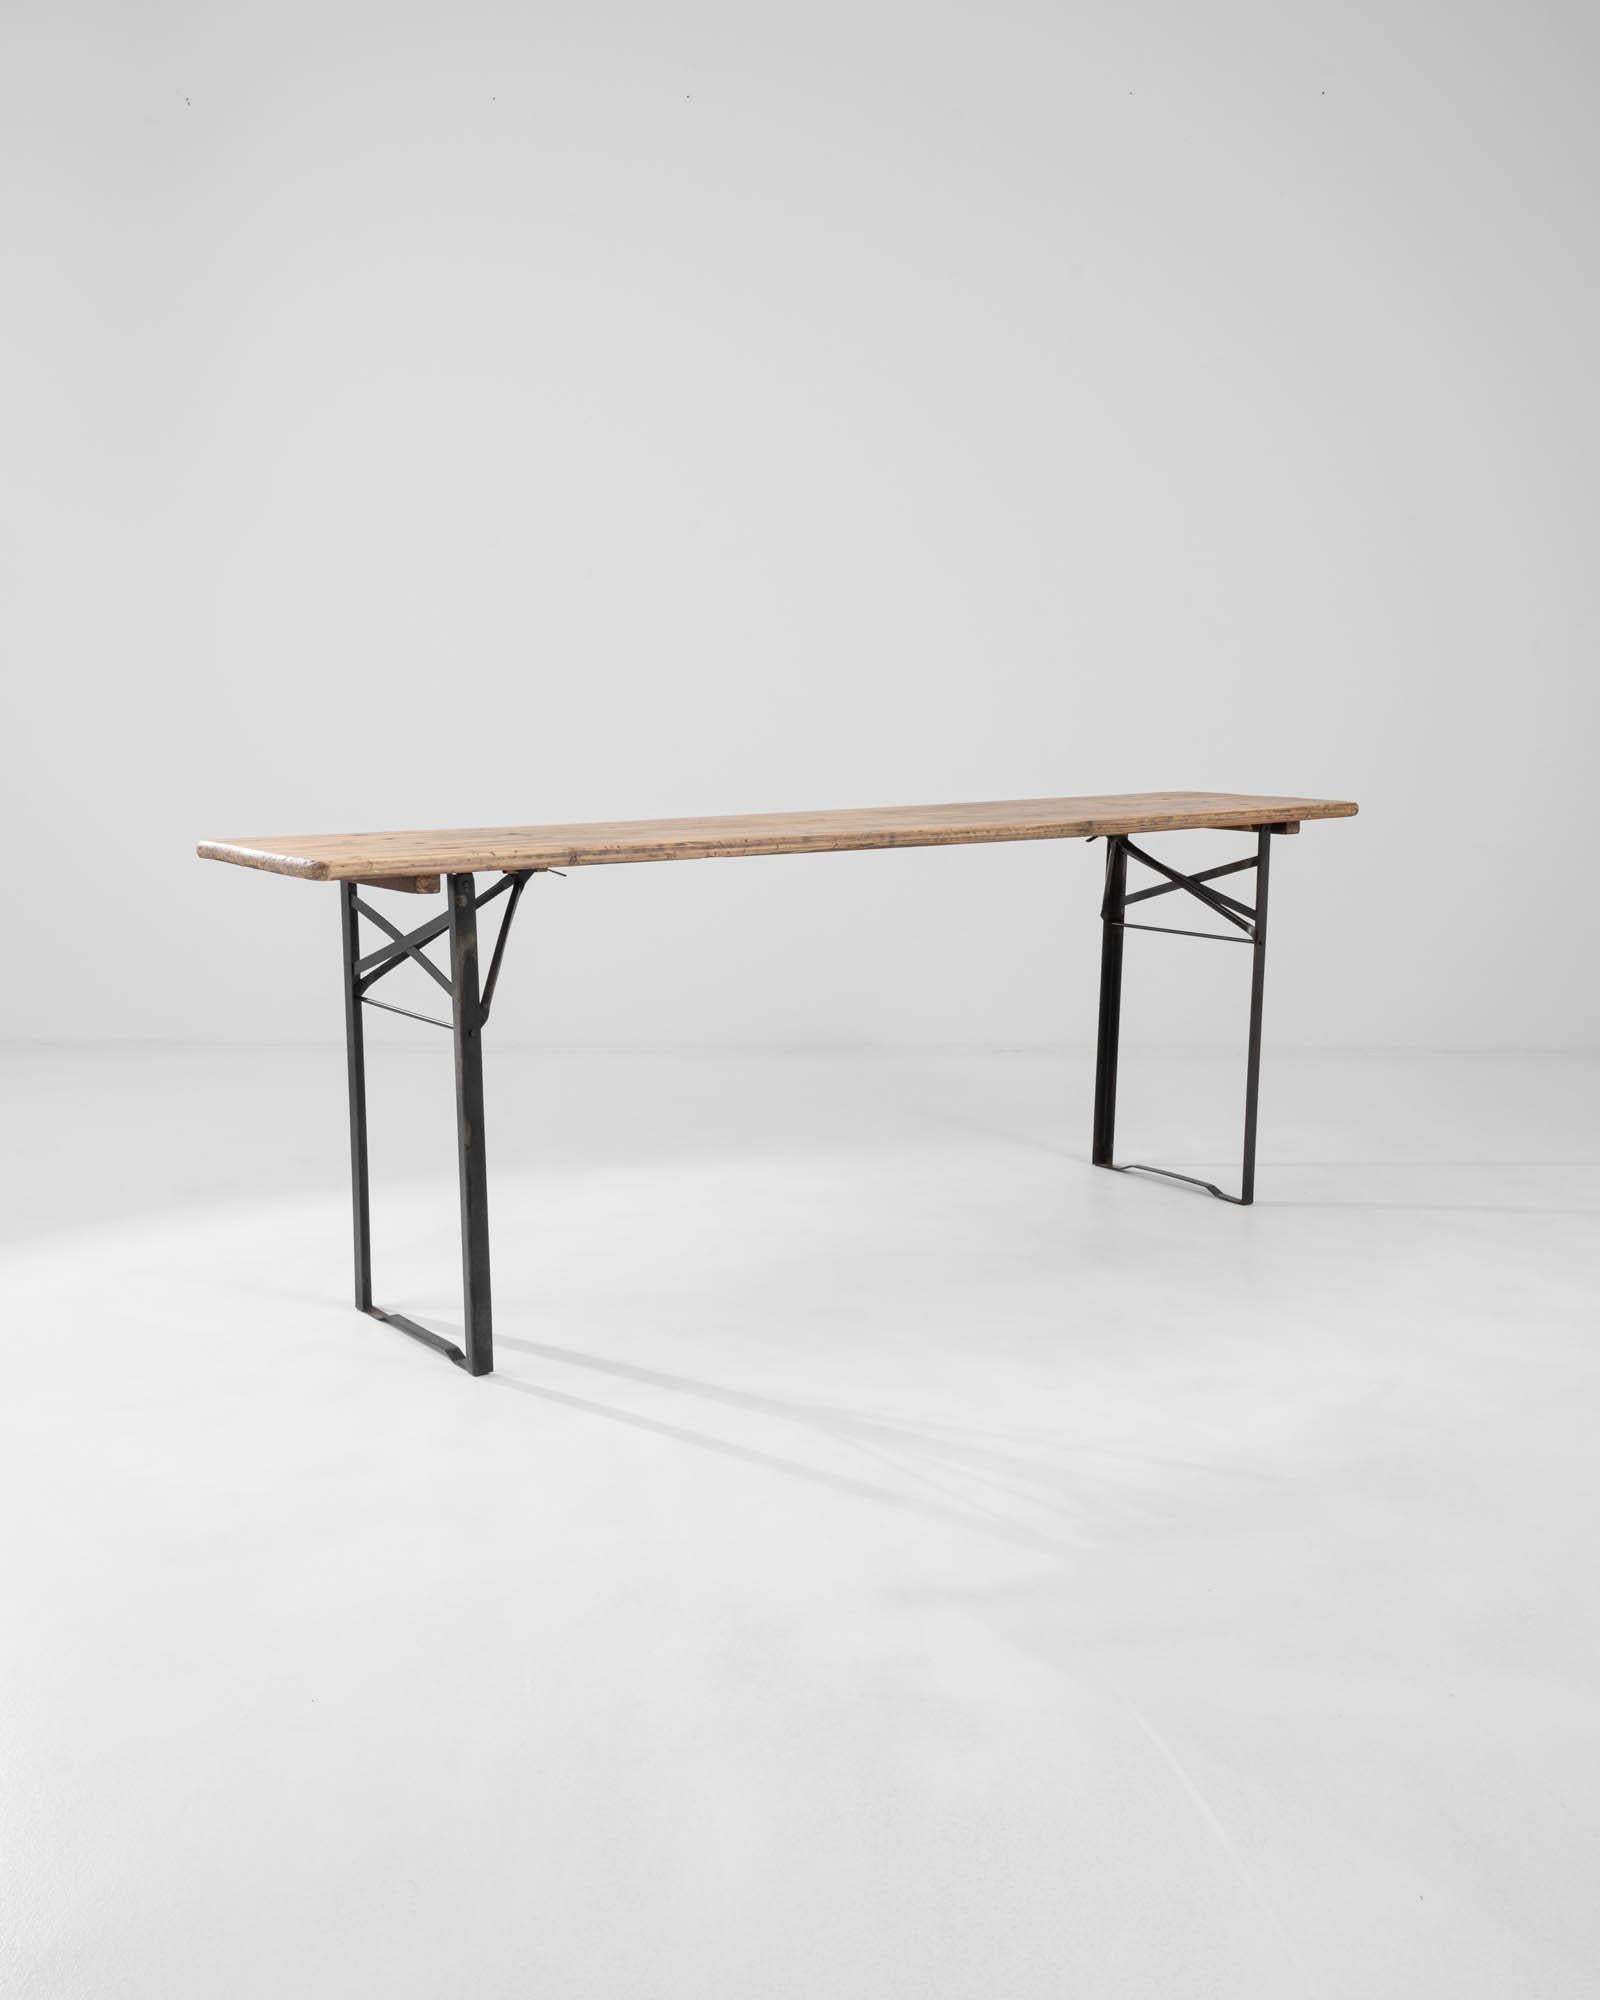 Ein Metalltisch mit Holzplatte aus dem Frankreich des 20. Jahrhunderts. Beweglich und drahtig, strahlt dieser handwerkliche Tisch ein Gefühl von fleißiger und handgemachter Kreativität aus. Die Metallelemente sind zu einem geometrischen Netz